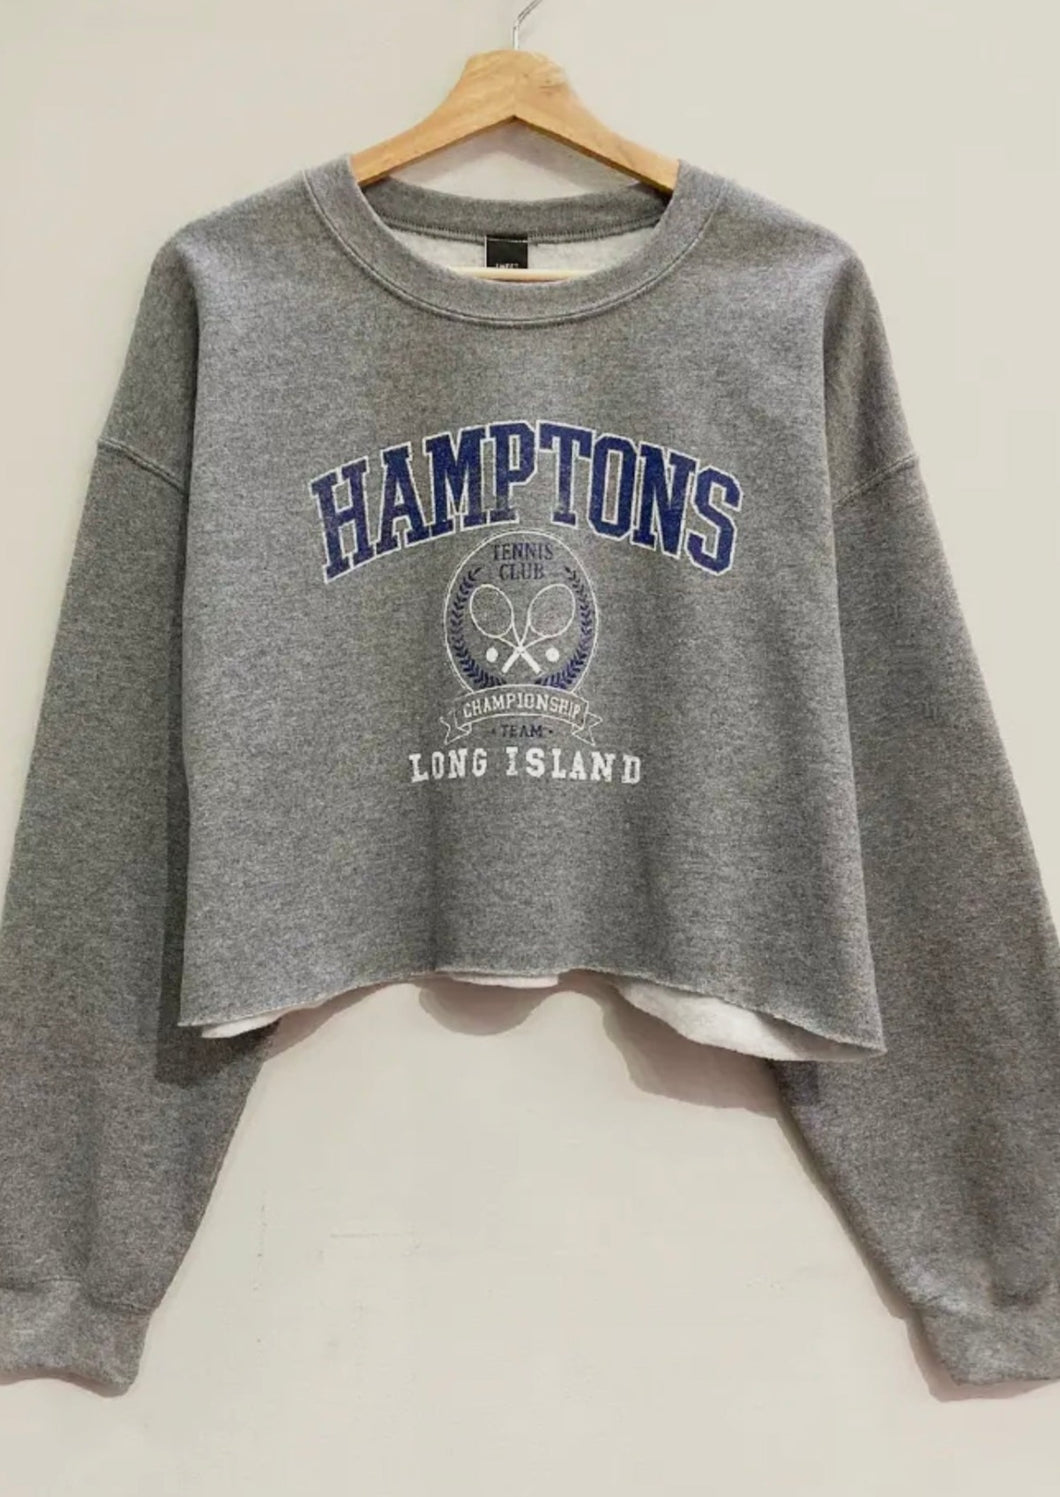 Hampton's Sweatshirt